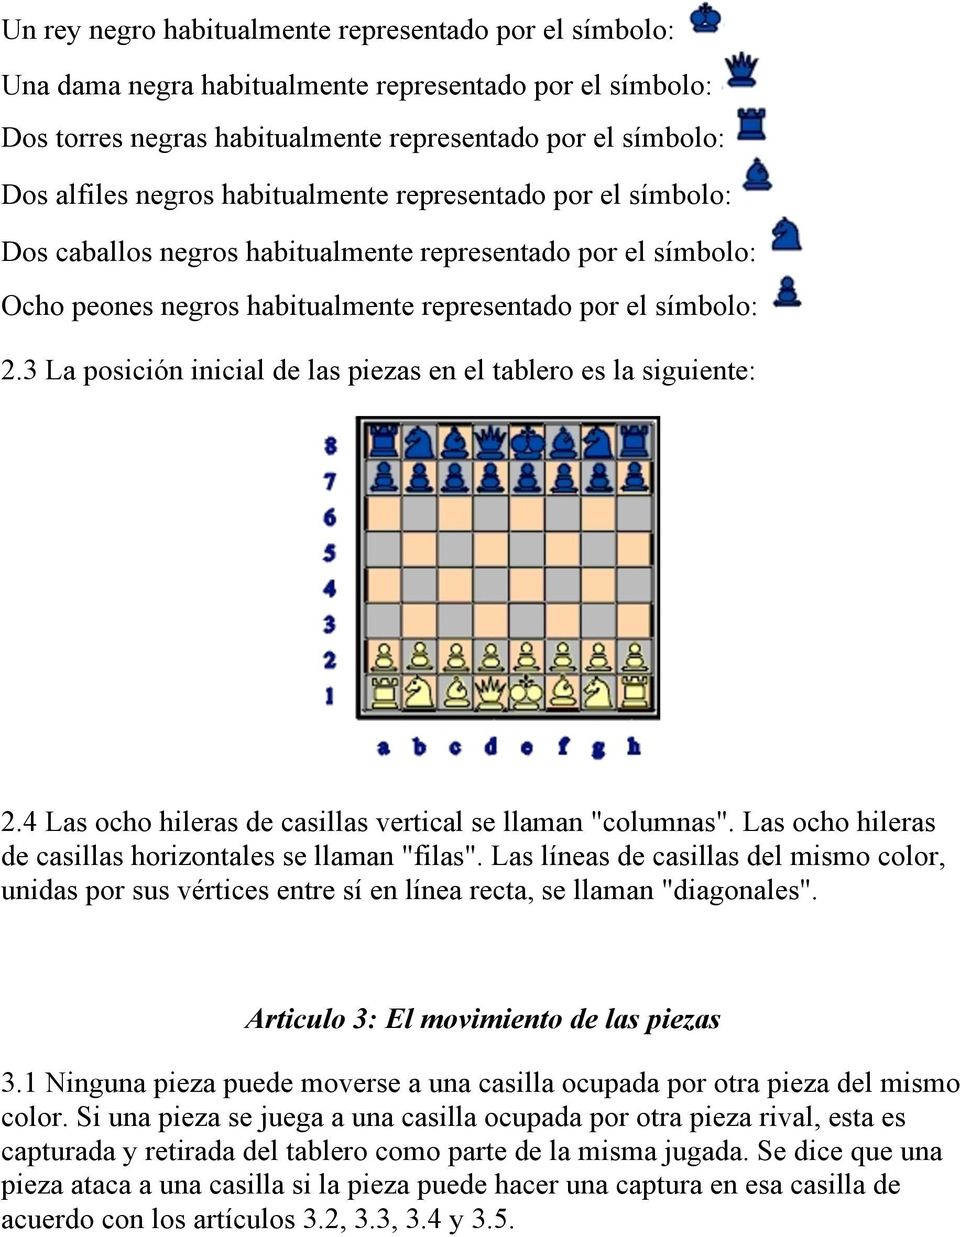 3 La posición inicial de las piezas en el tablero es la siguiente: 2.4 Las ocho hileras de casillas vertical se llaman "columnas". Las ocho hileras de casillas horizontales se llaman "filas".